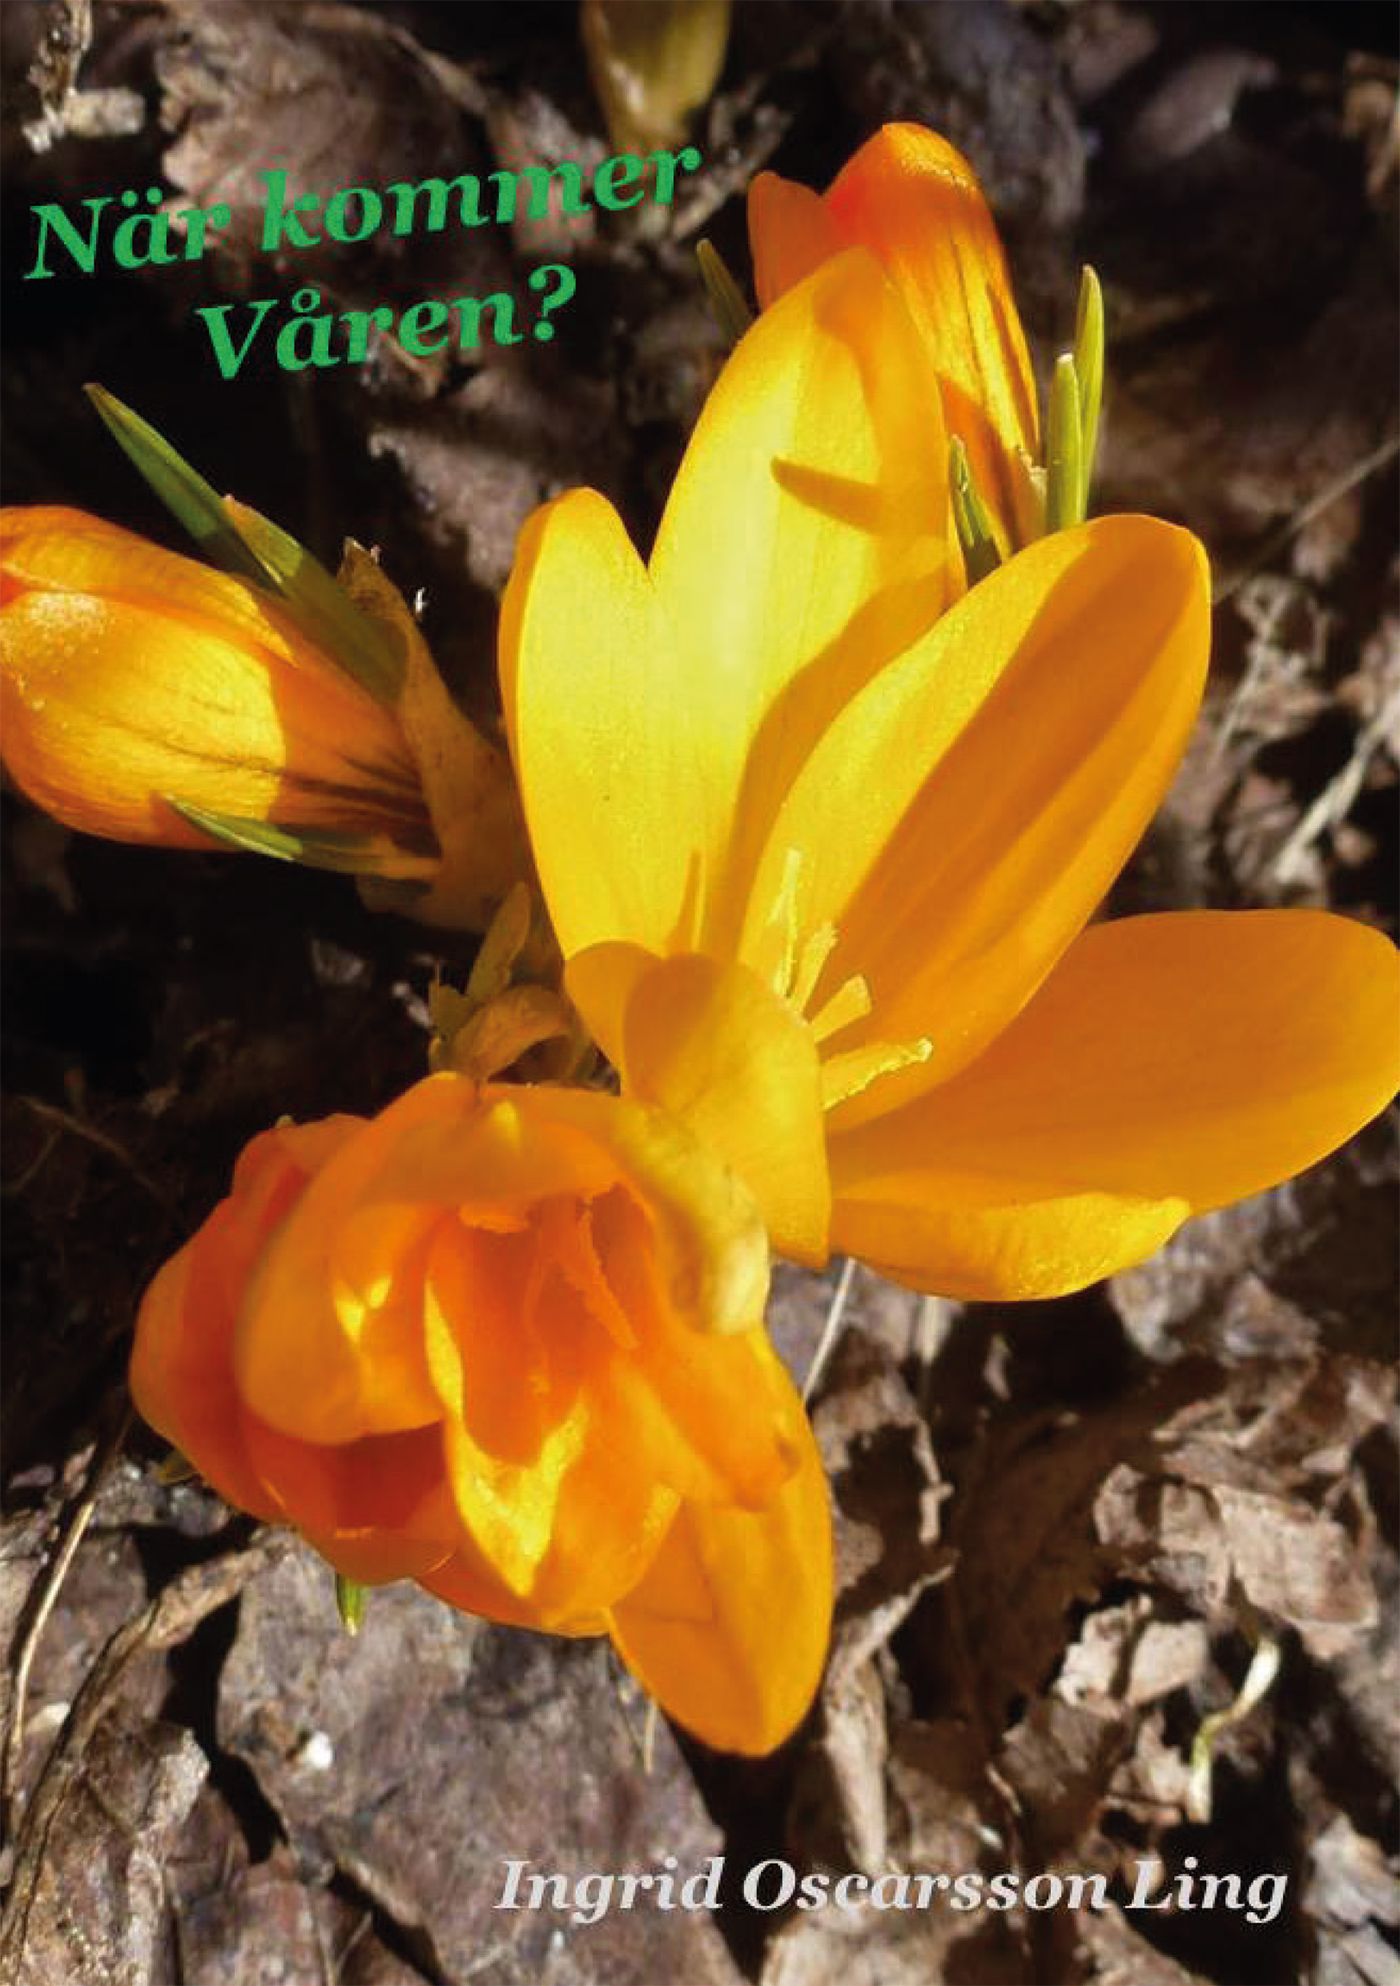 När kommer våren?, e-bok av Ingrid Oscarsson Ling